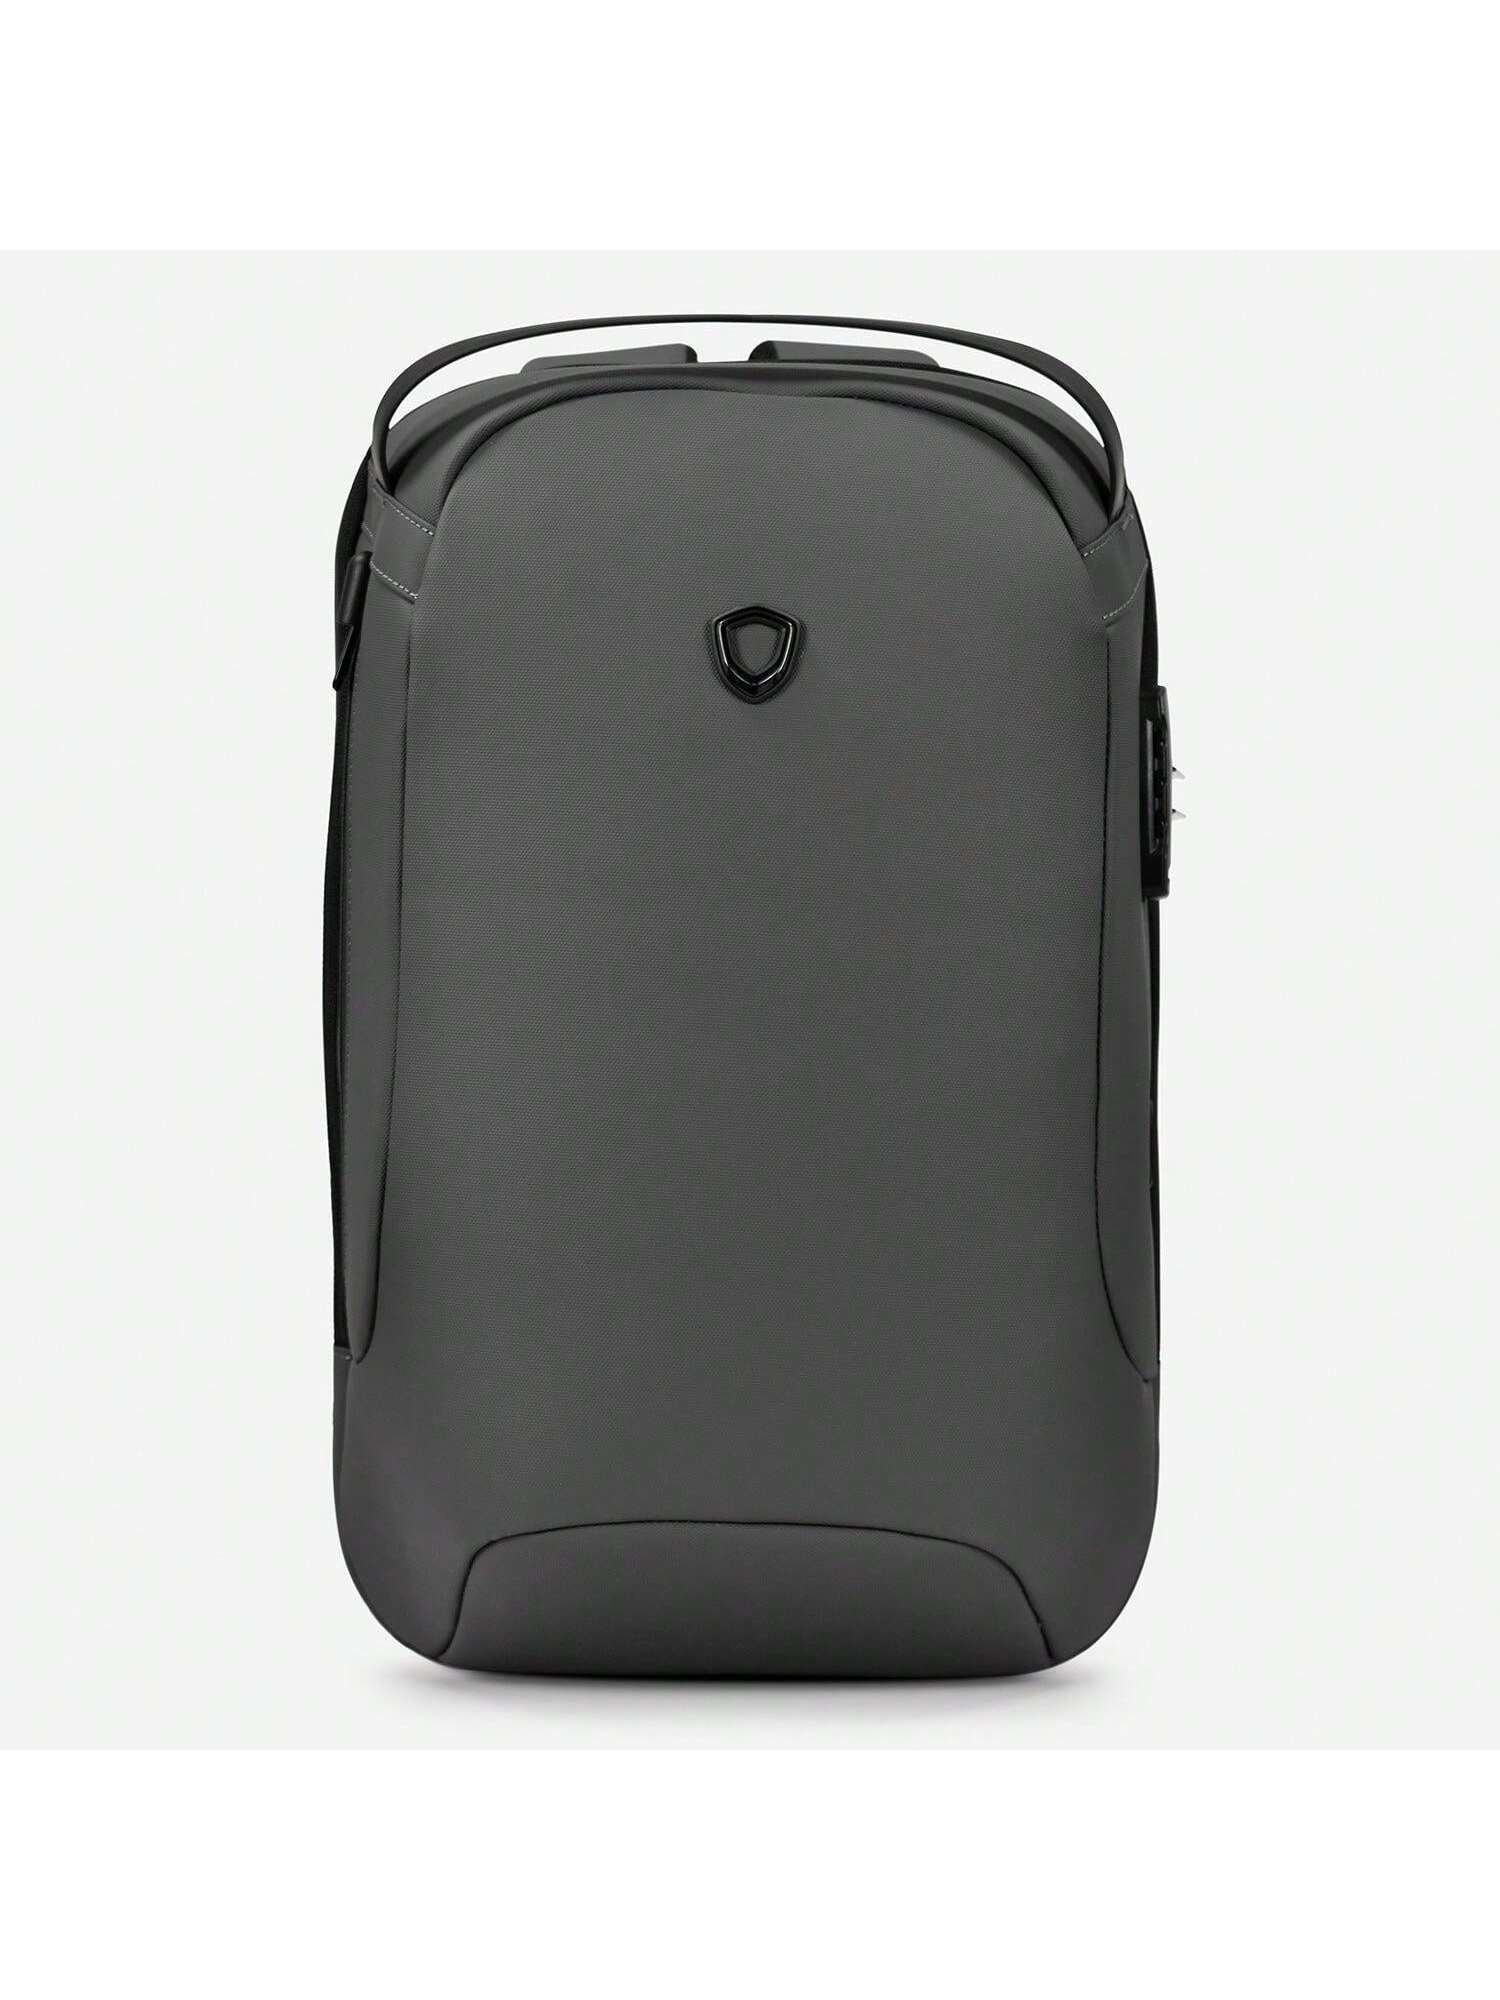 Матовый водостойкий рюкзак Frailey с USB-портом и кодовым замком, серый